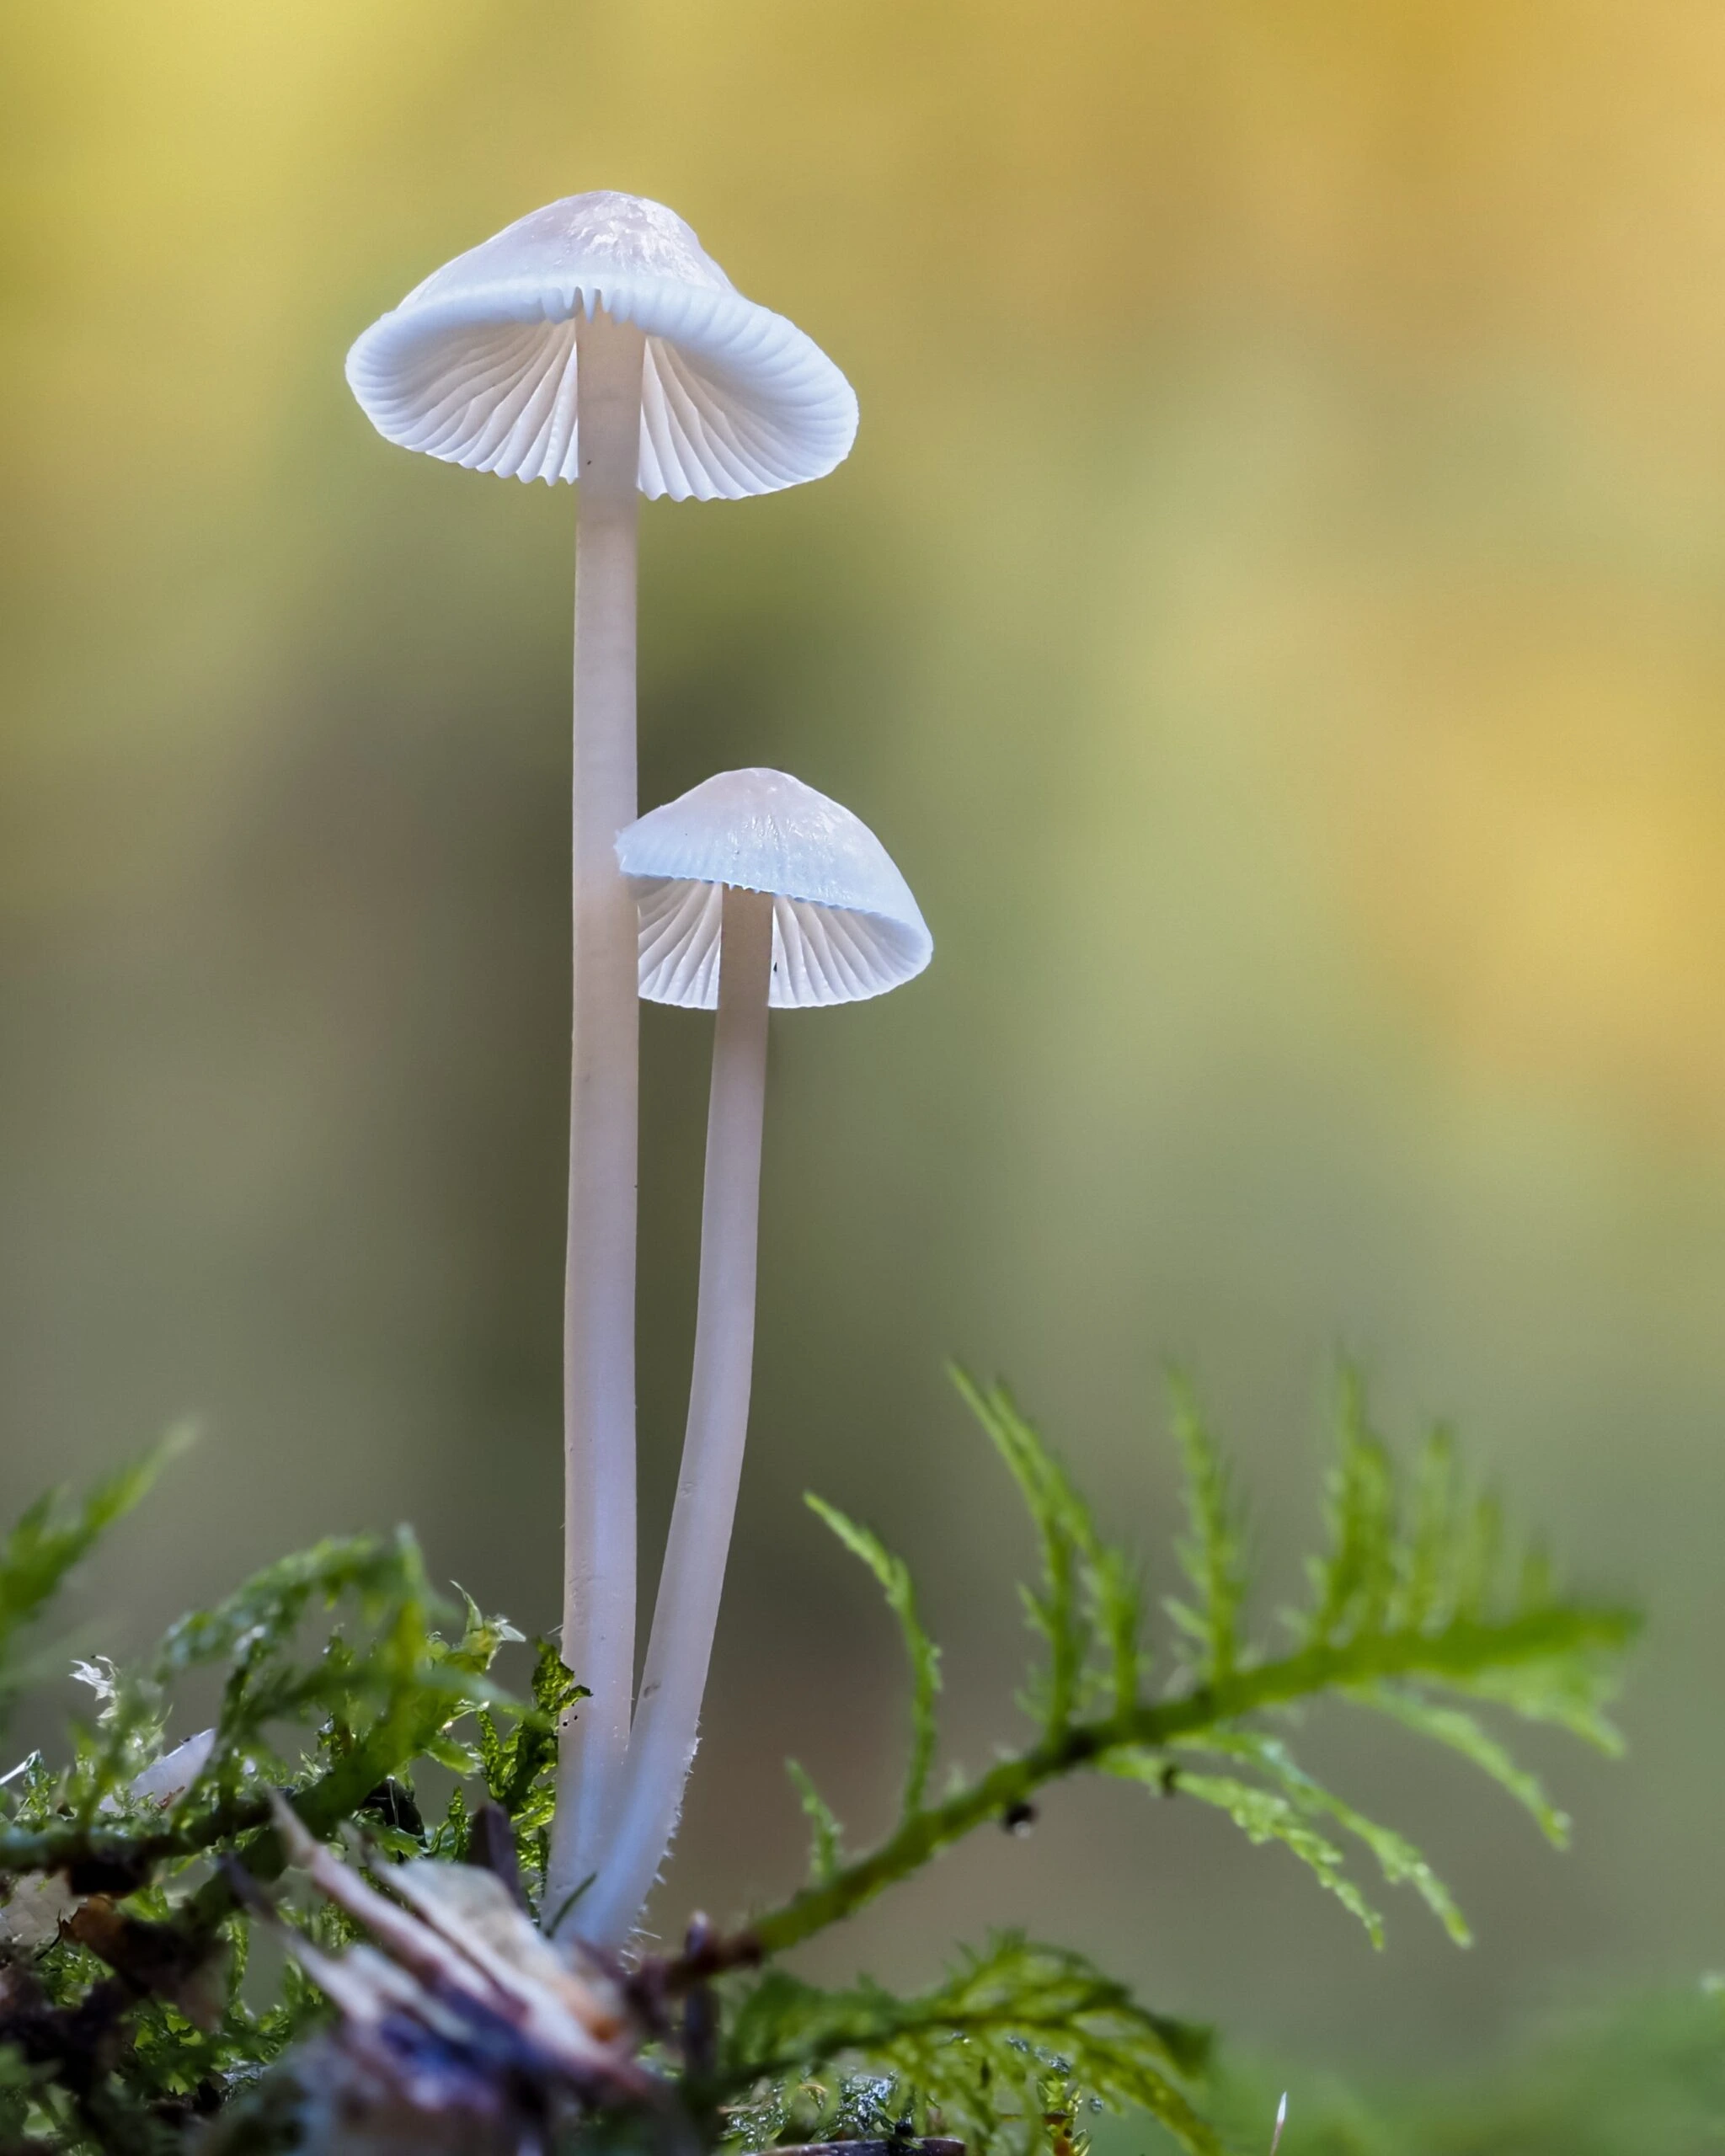 dorothea-oldani-translucent white mushroom thin stalked capped-unsplash